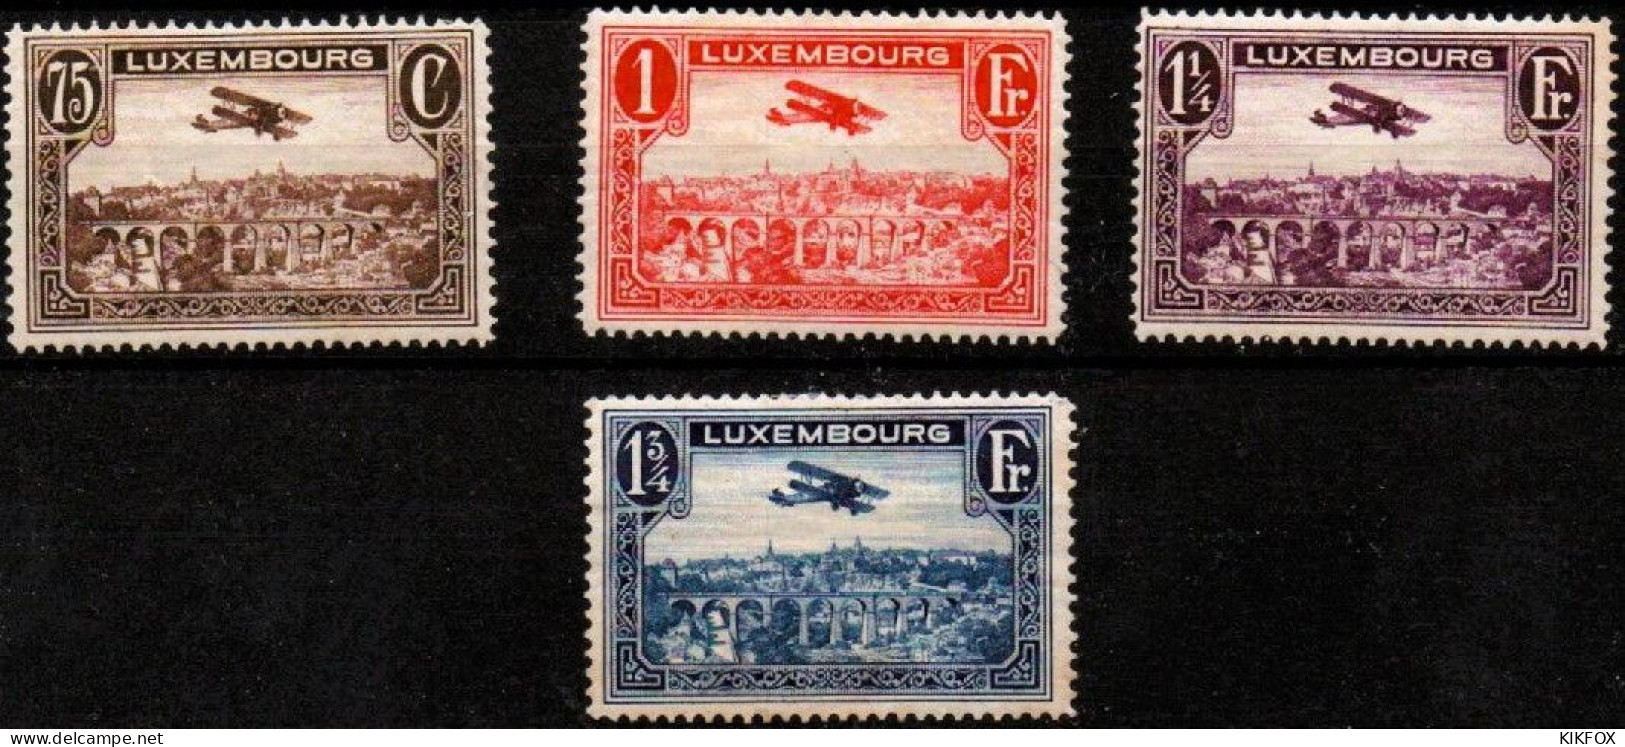 LUXEMBOURG, LUXEMBURG 1931 Mi 234 - 237 , PA 1 - 4  Flugpost , BREGUET-DOPPELDECKER, UNGEBRAUCHT, CHARNIERES * - Neufs